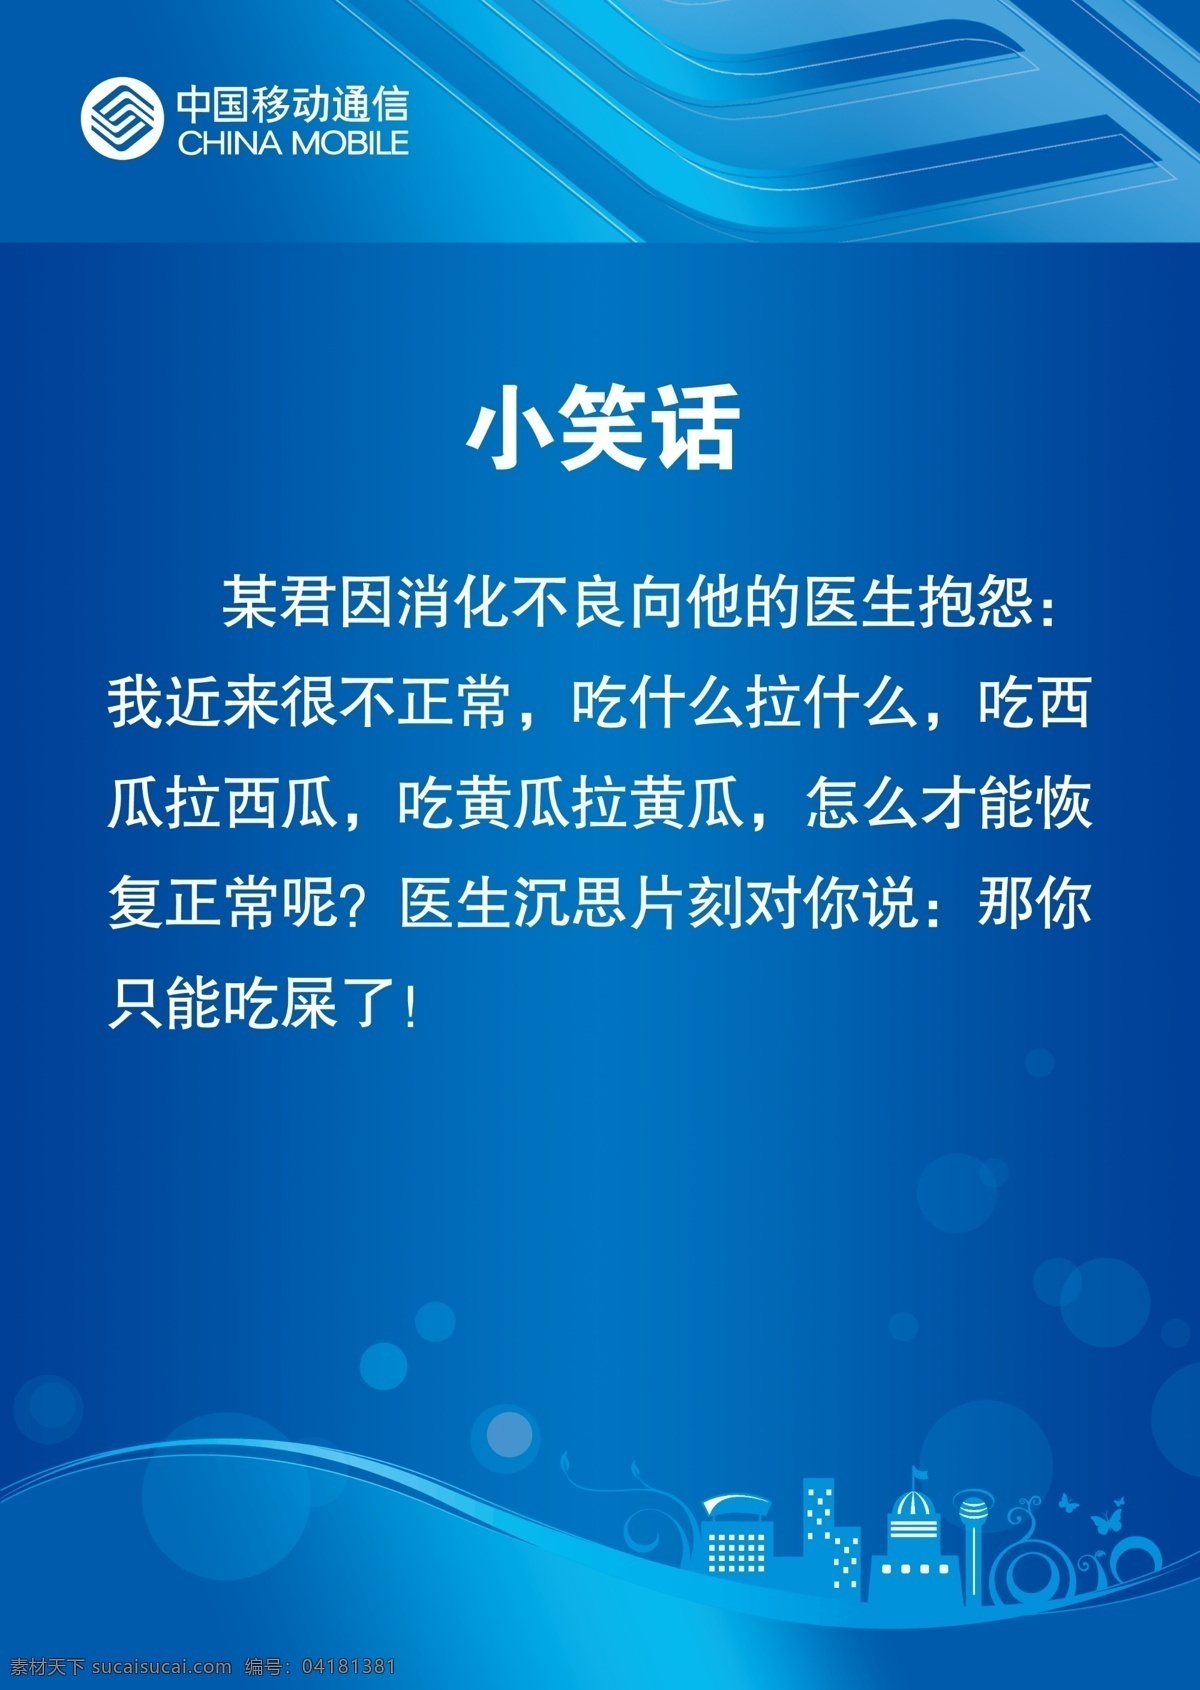 小笑话 中国移动 移动logo 蓝色 移动 标识 辅助 图形 笑话 圆圈 广告设计模板 源文件